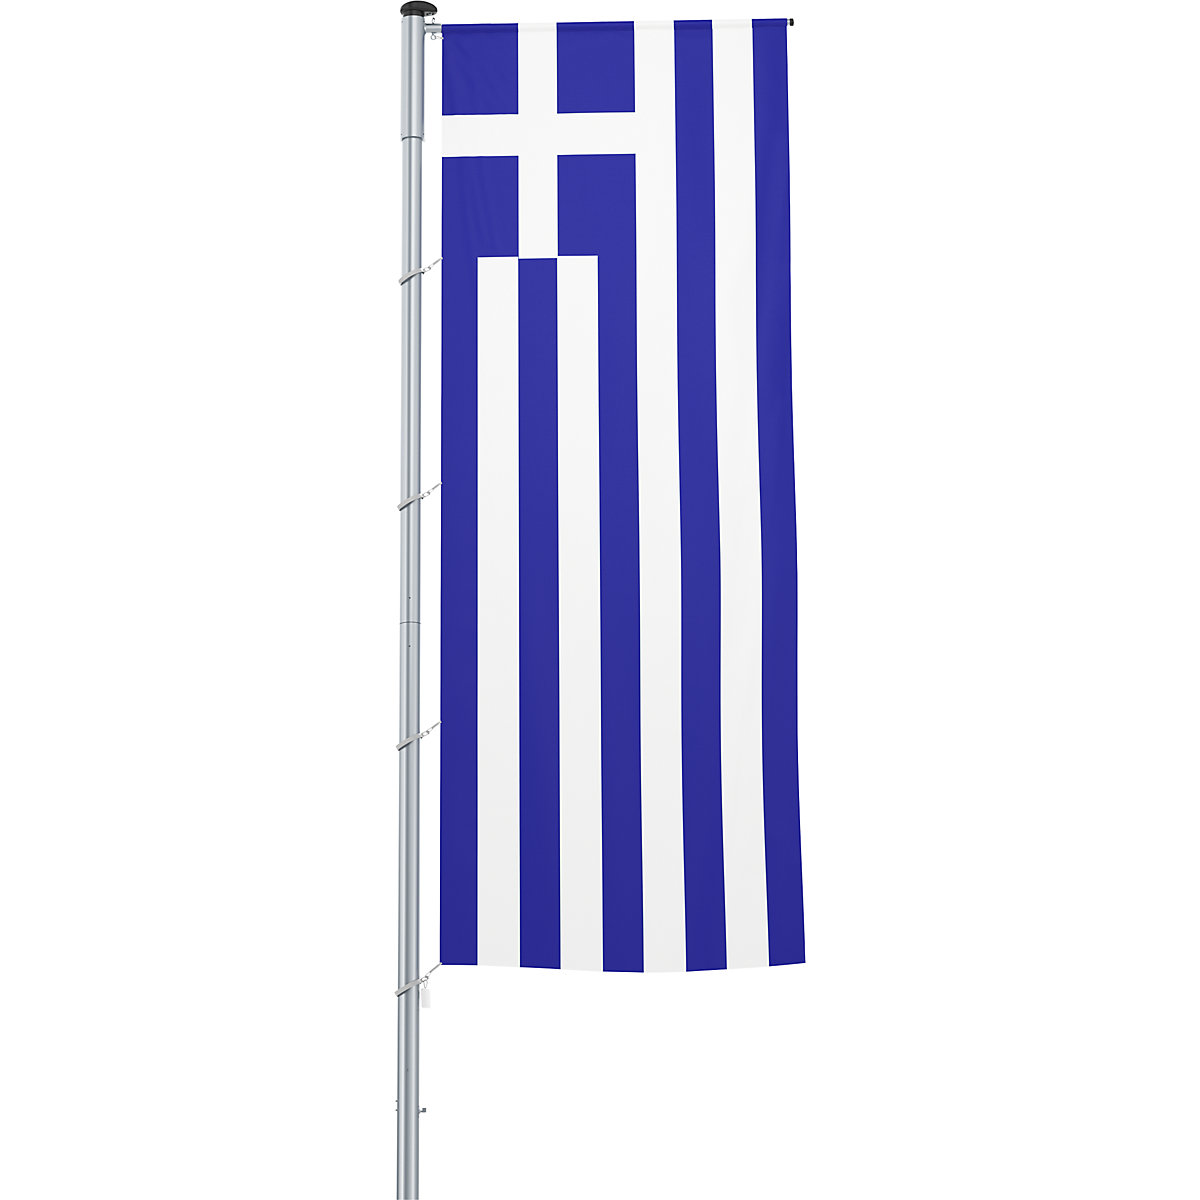 Vlajka na pozdĺžne upevnenie na stožiar/národná vlajka – Mannus, formát 1,2 x 3 m, Grécko-18